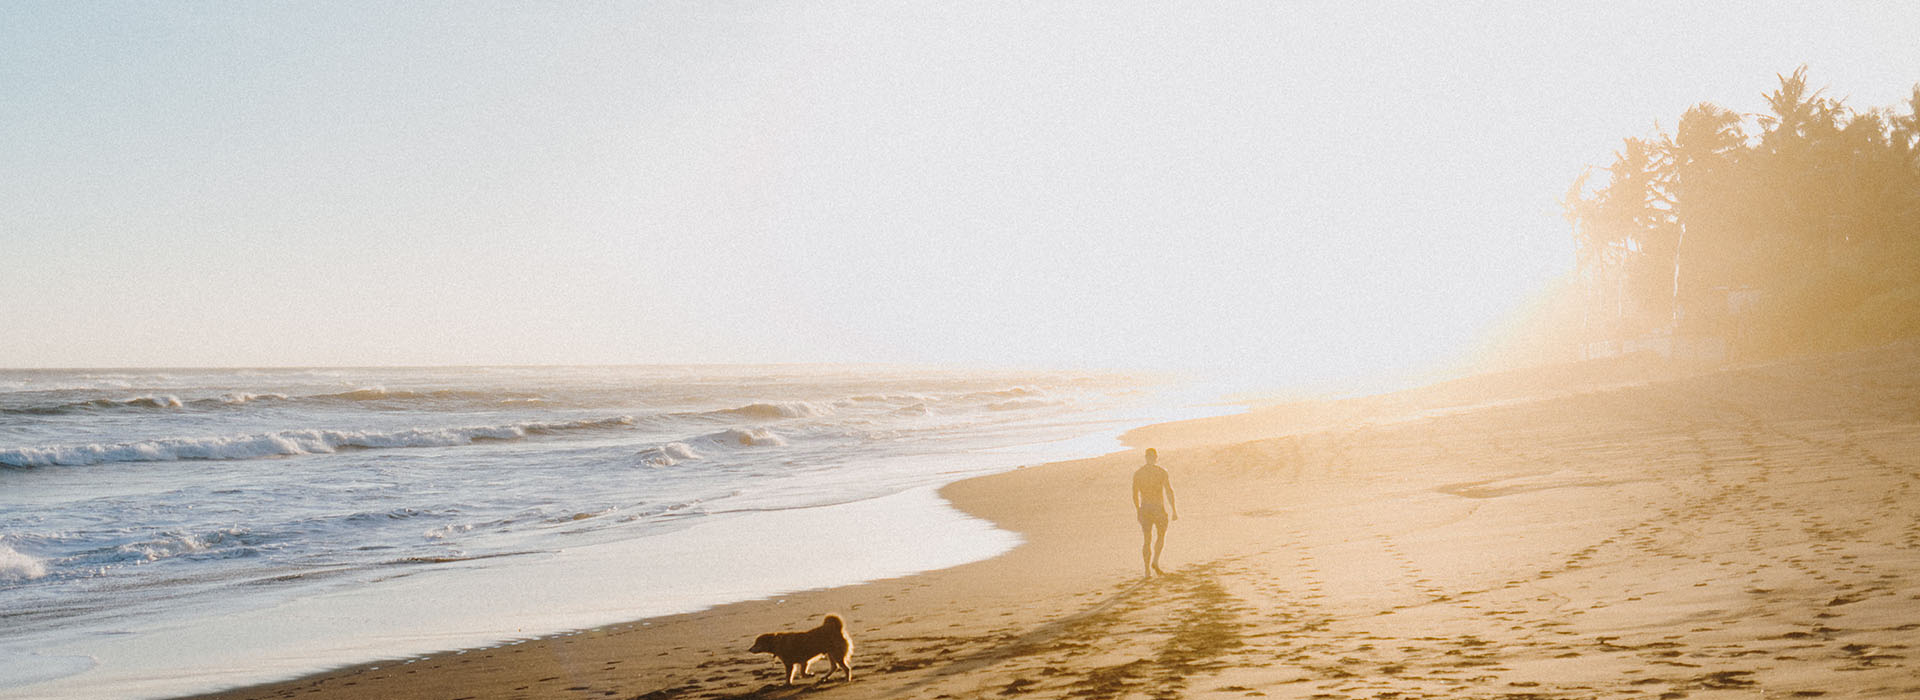 Am Strand mit Hund und Sonne